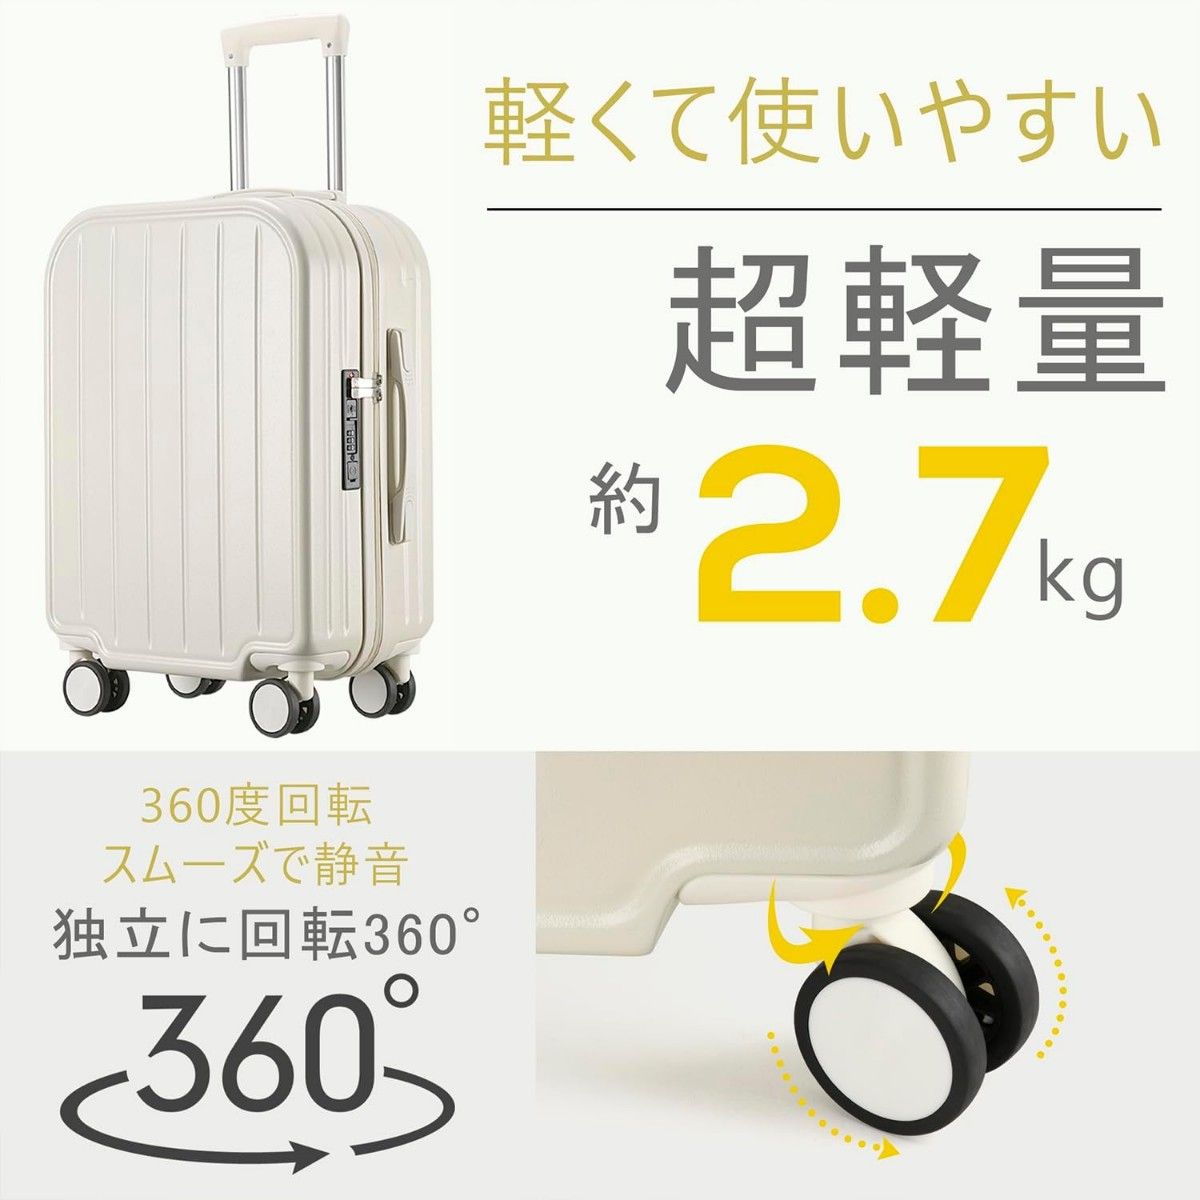 スーツケース 機内持ち込み キャリーケース キャリーバッグ USB充電ポート付